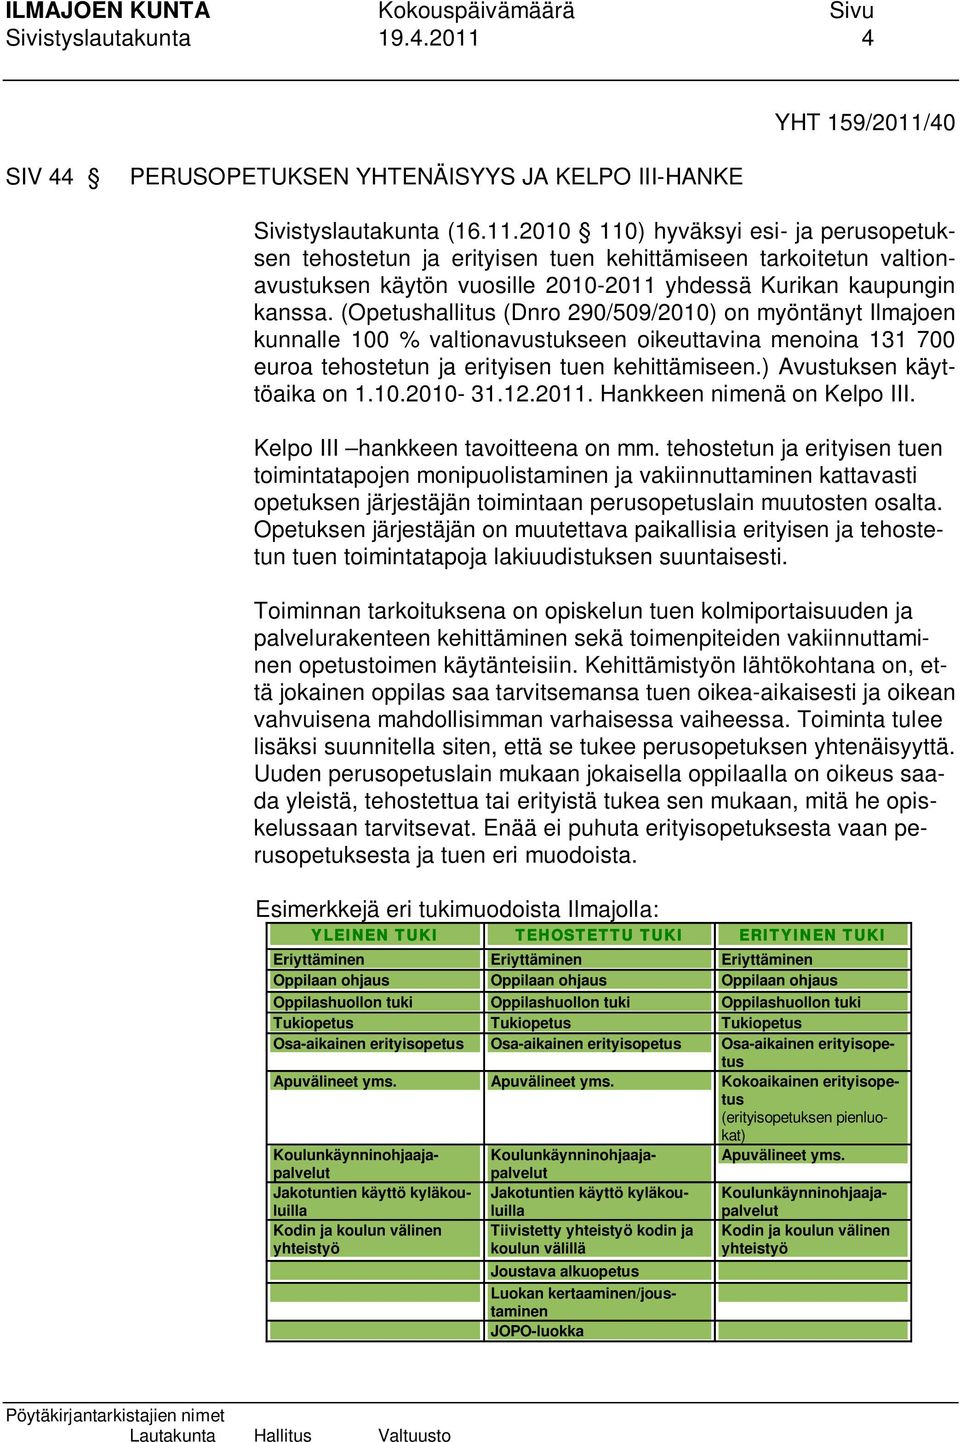 (Opetushallitus (Dnro 290/509/2010) on myöntänyt Ilmajoen kunnalle 100 % valtionavustukseen oikeuttavina menoina 131 700 euroa tehostetun ja erityisen tuen kehittämiseen.) Avustuksen käyttöaika on 1.